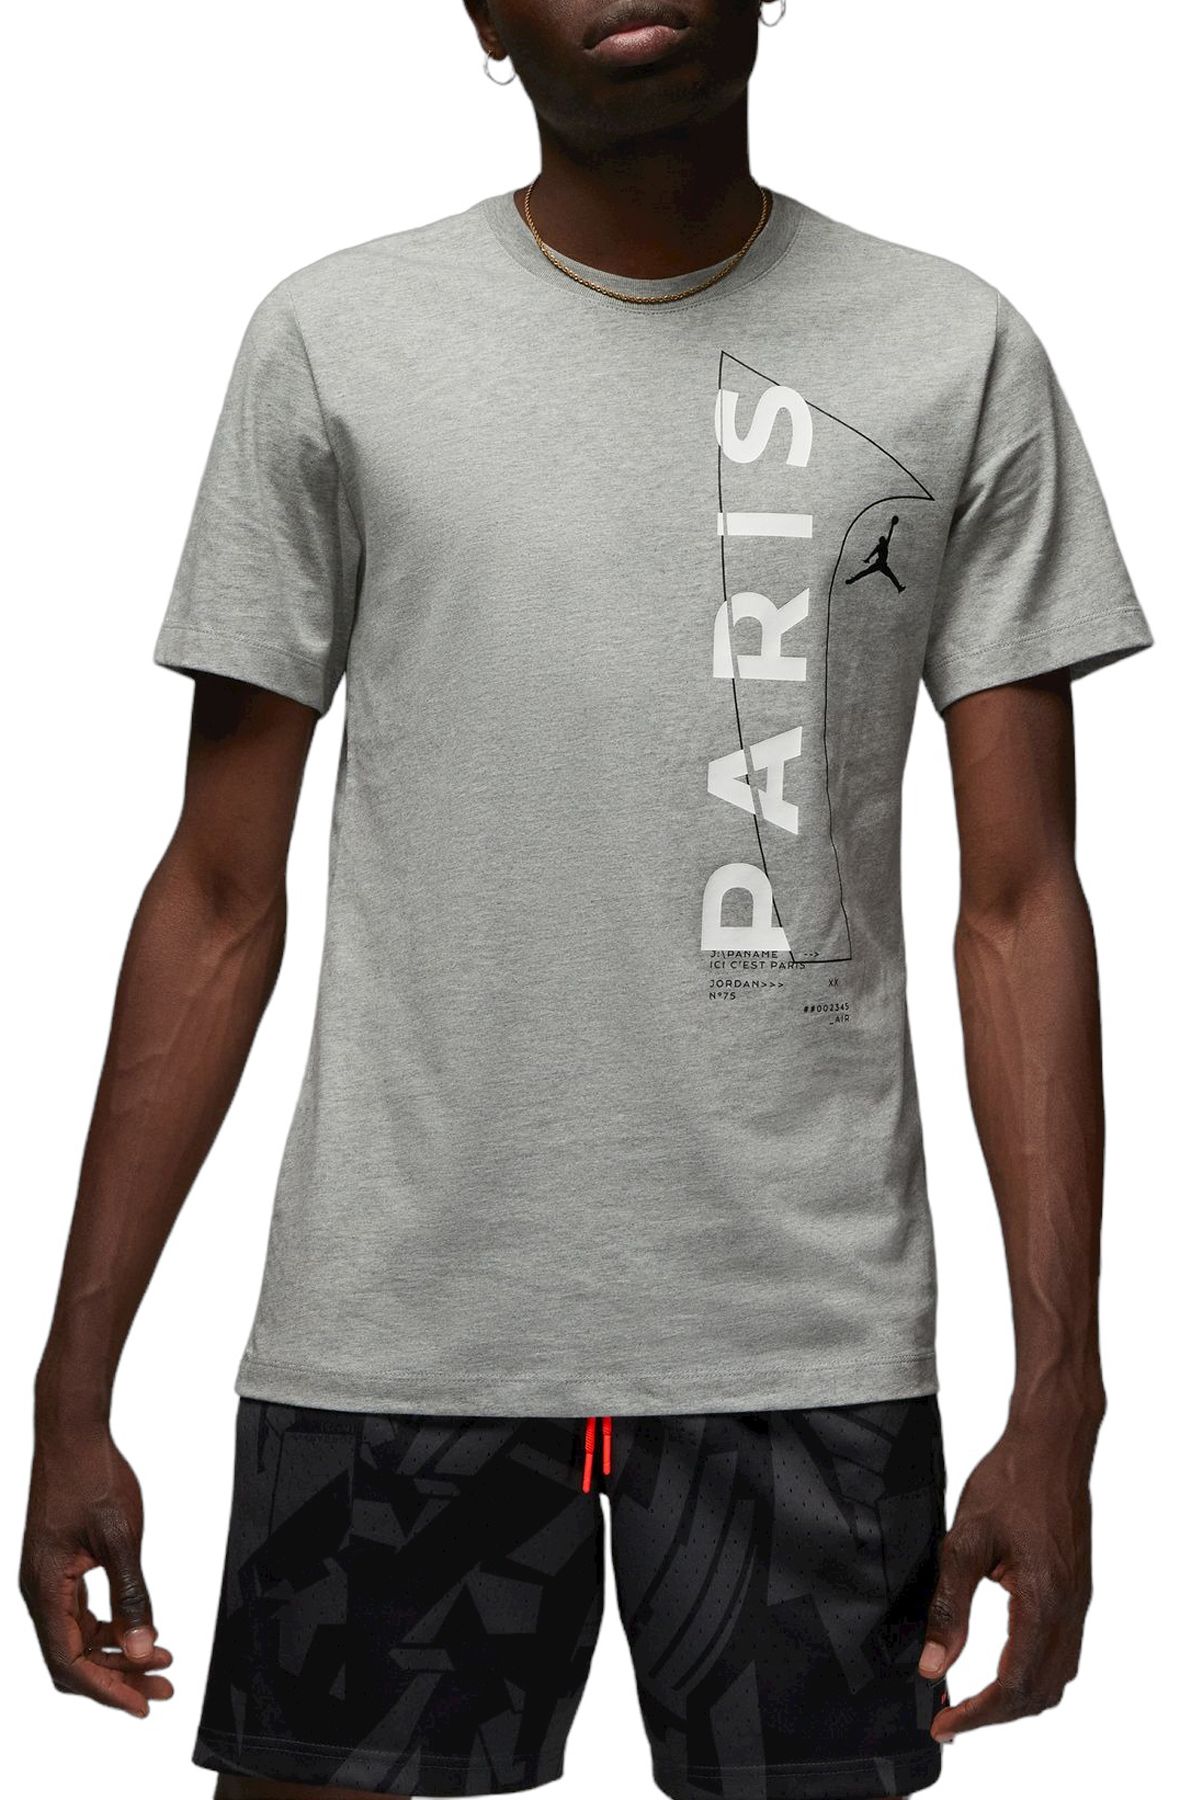 Shop Paris Saint-Germain Men's Graphic T-Shirt